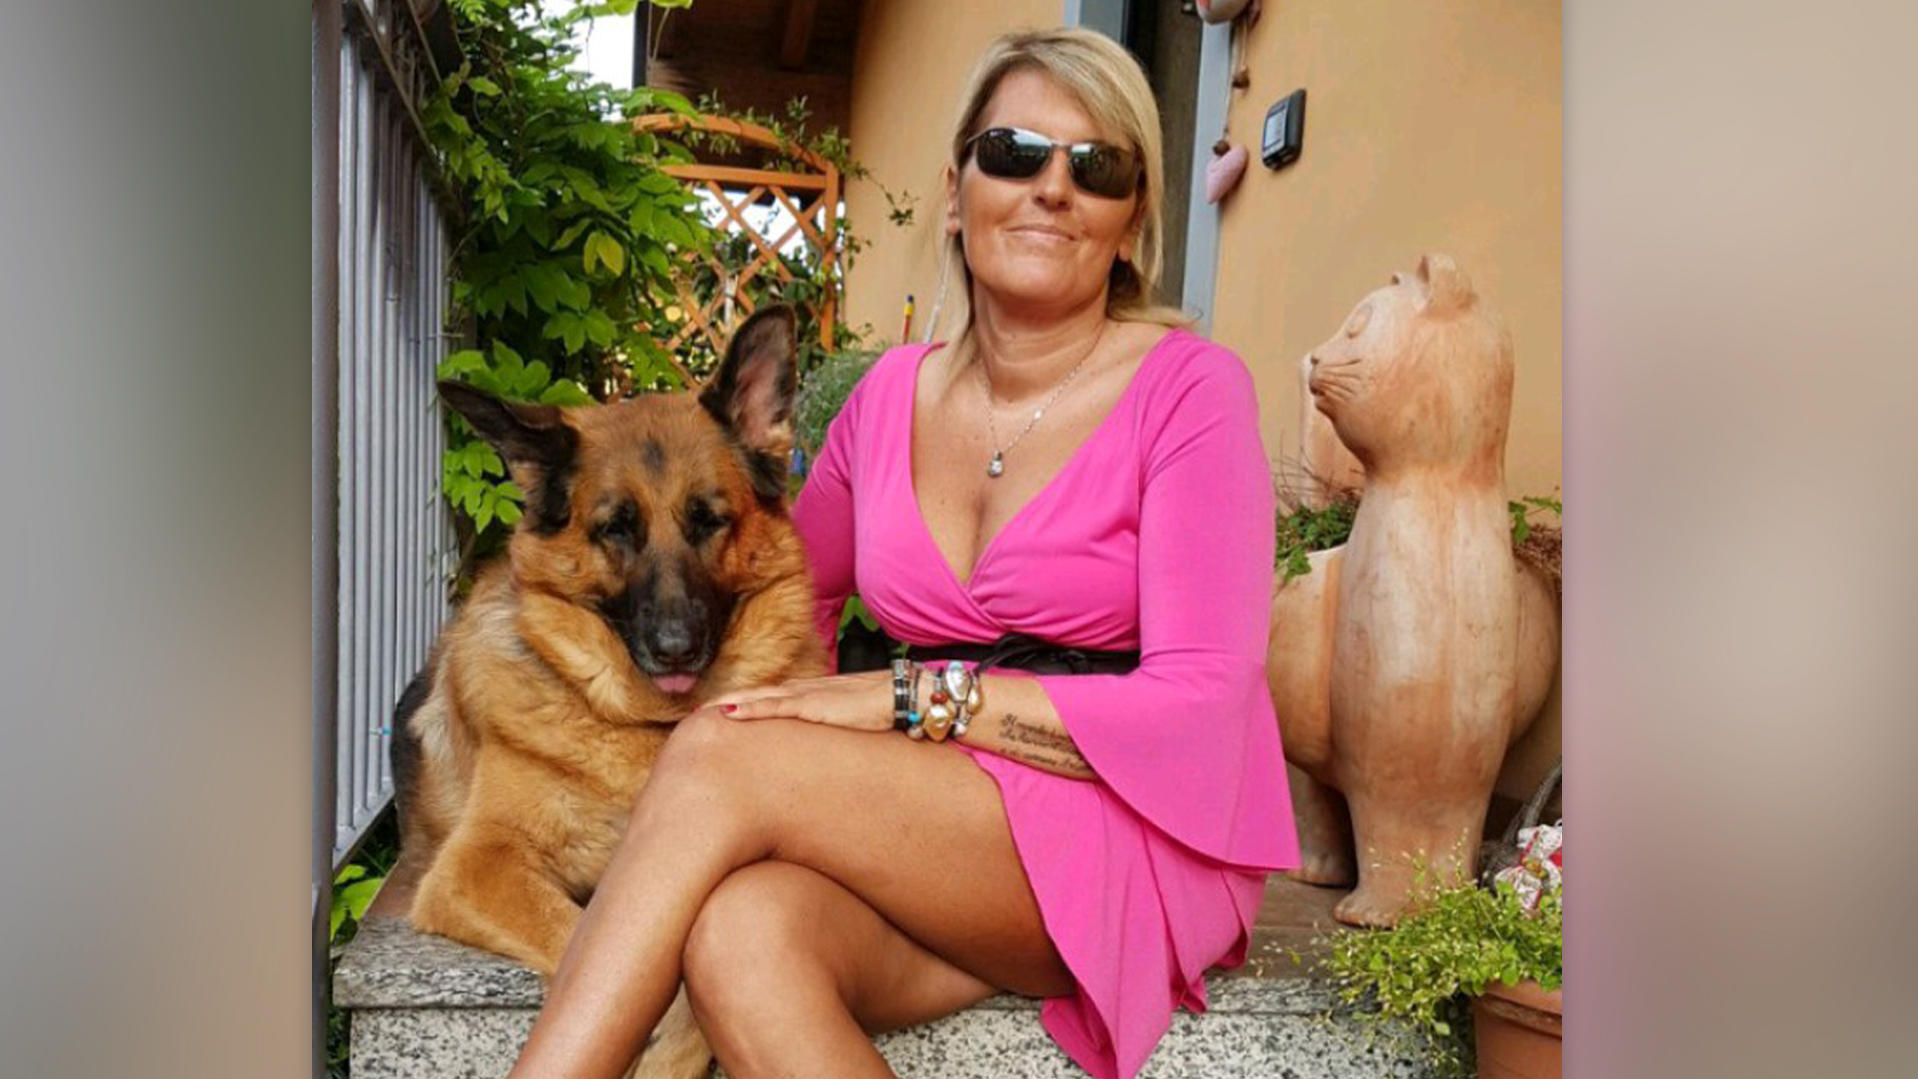 Italien: Frau lockte Männer mit ihrem attraktiven Erscheinungsbild